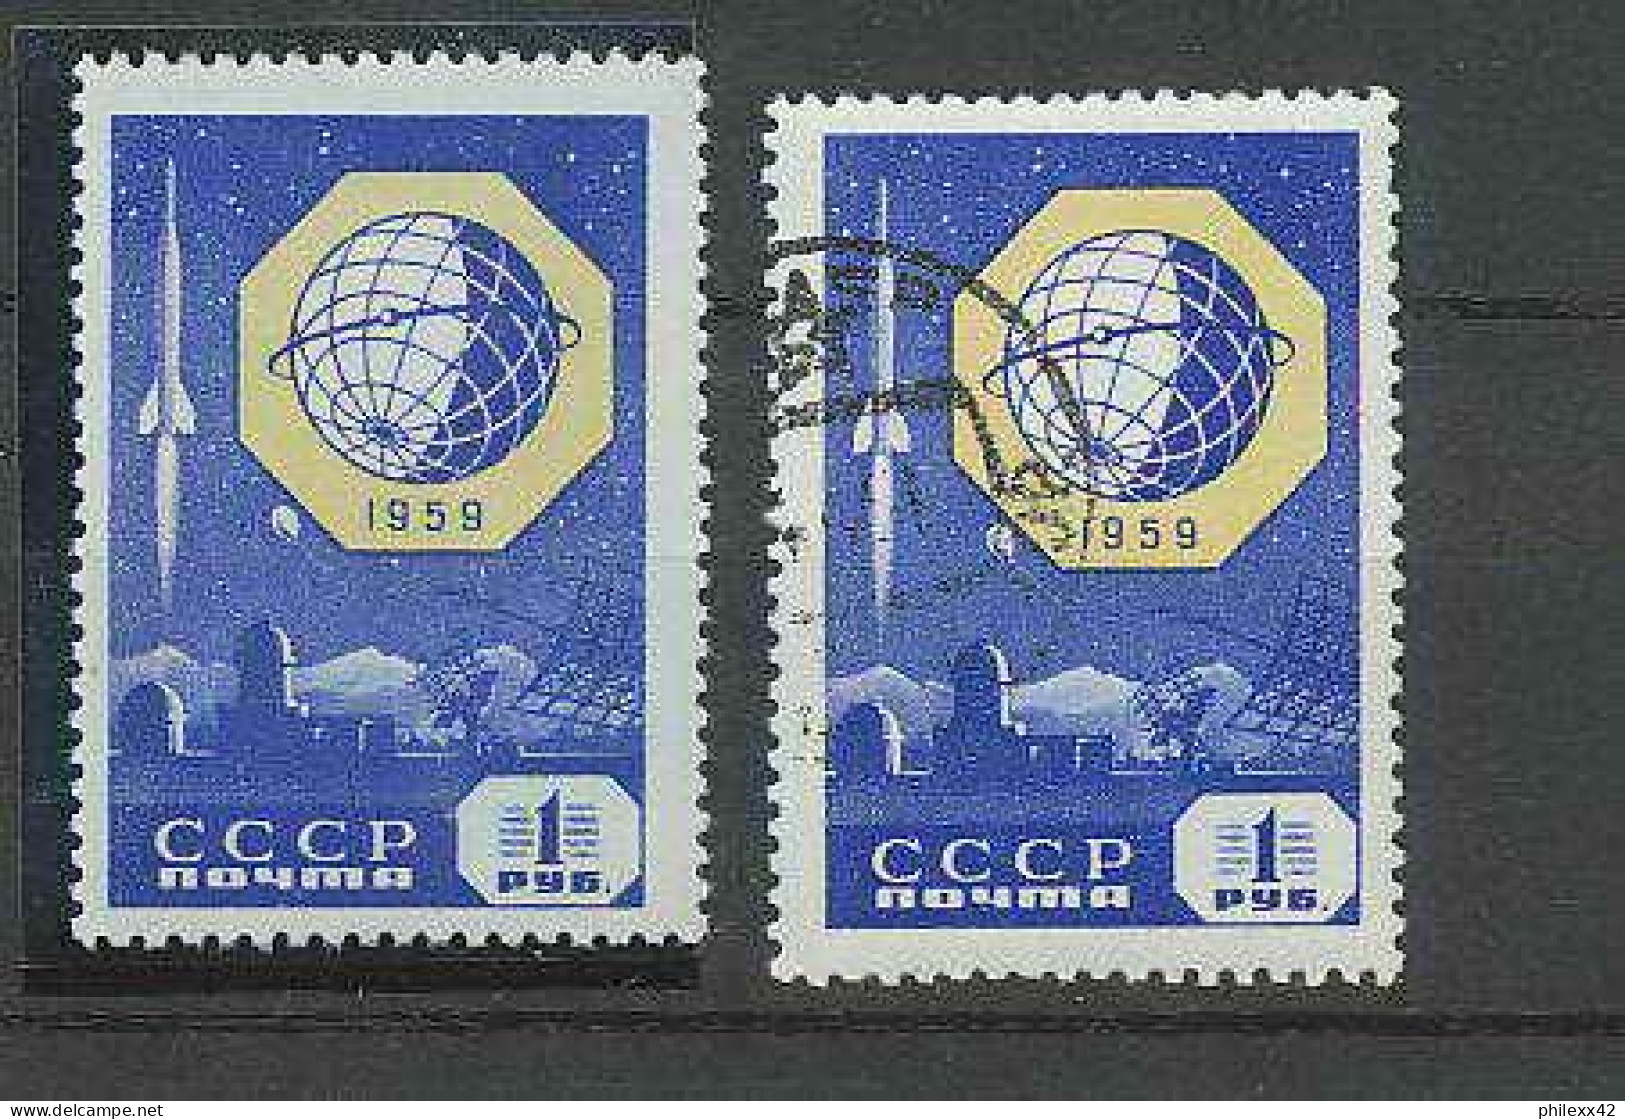 1337/ Espace (space) Neuf ** MNH Russie (Russia Urss USSR) 1959 + Oblitéré - Rusland En USSR